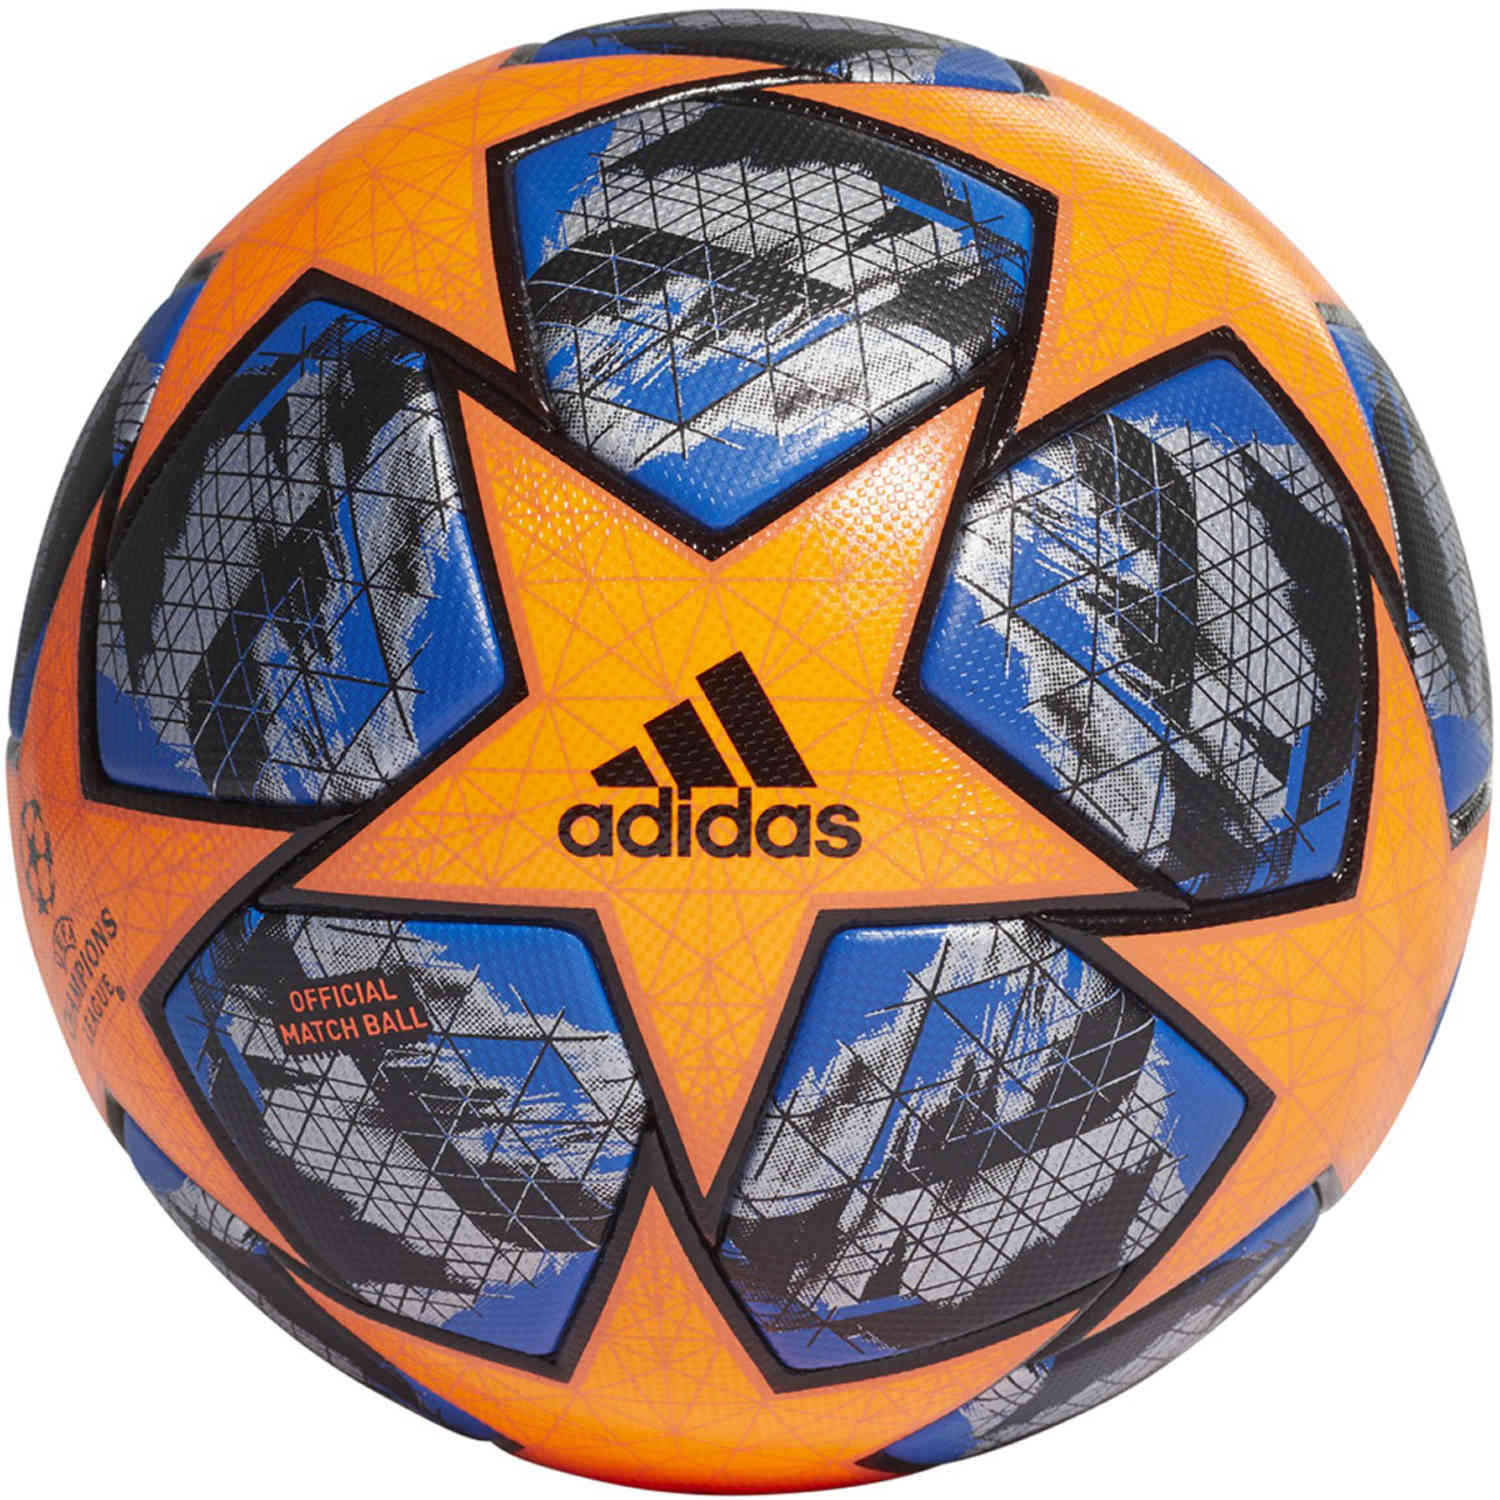 official match soccer ball